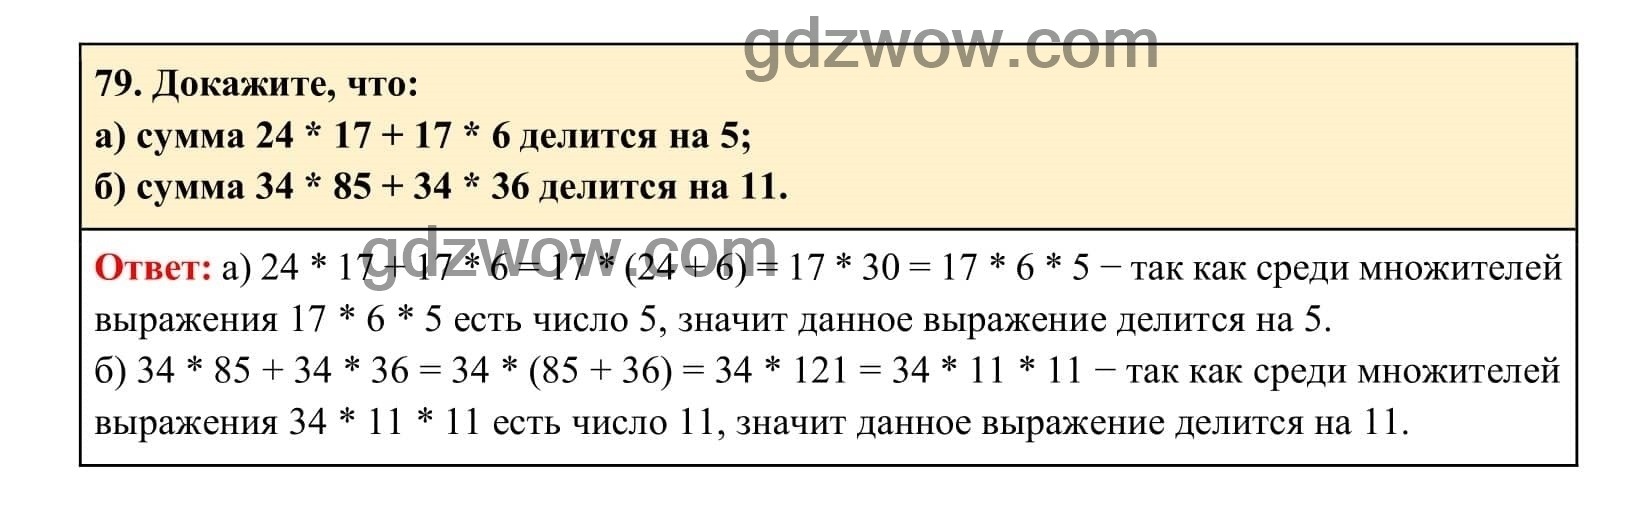 Упражнение 79 - ГДЗ по Алгебре 7 класс Учебник Макарычев (решебник) - GDZwow